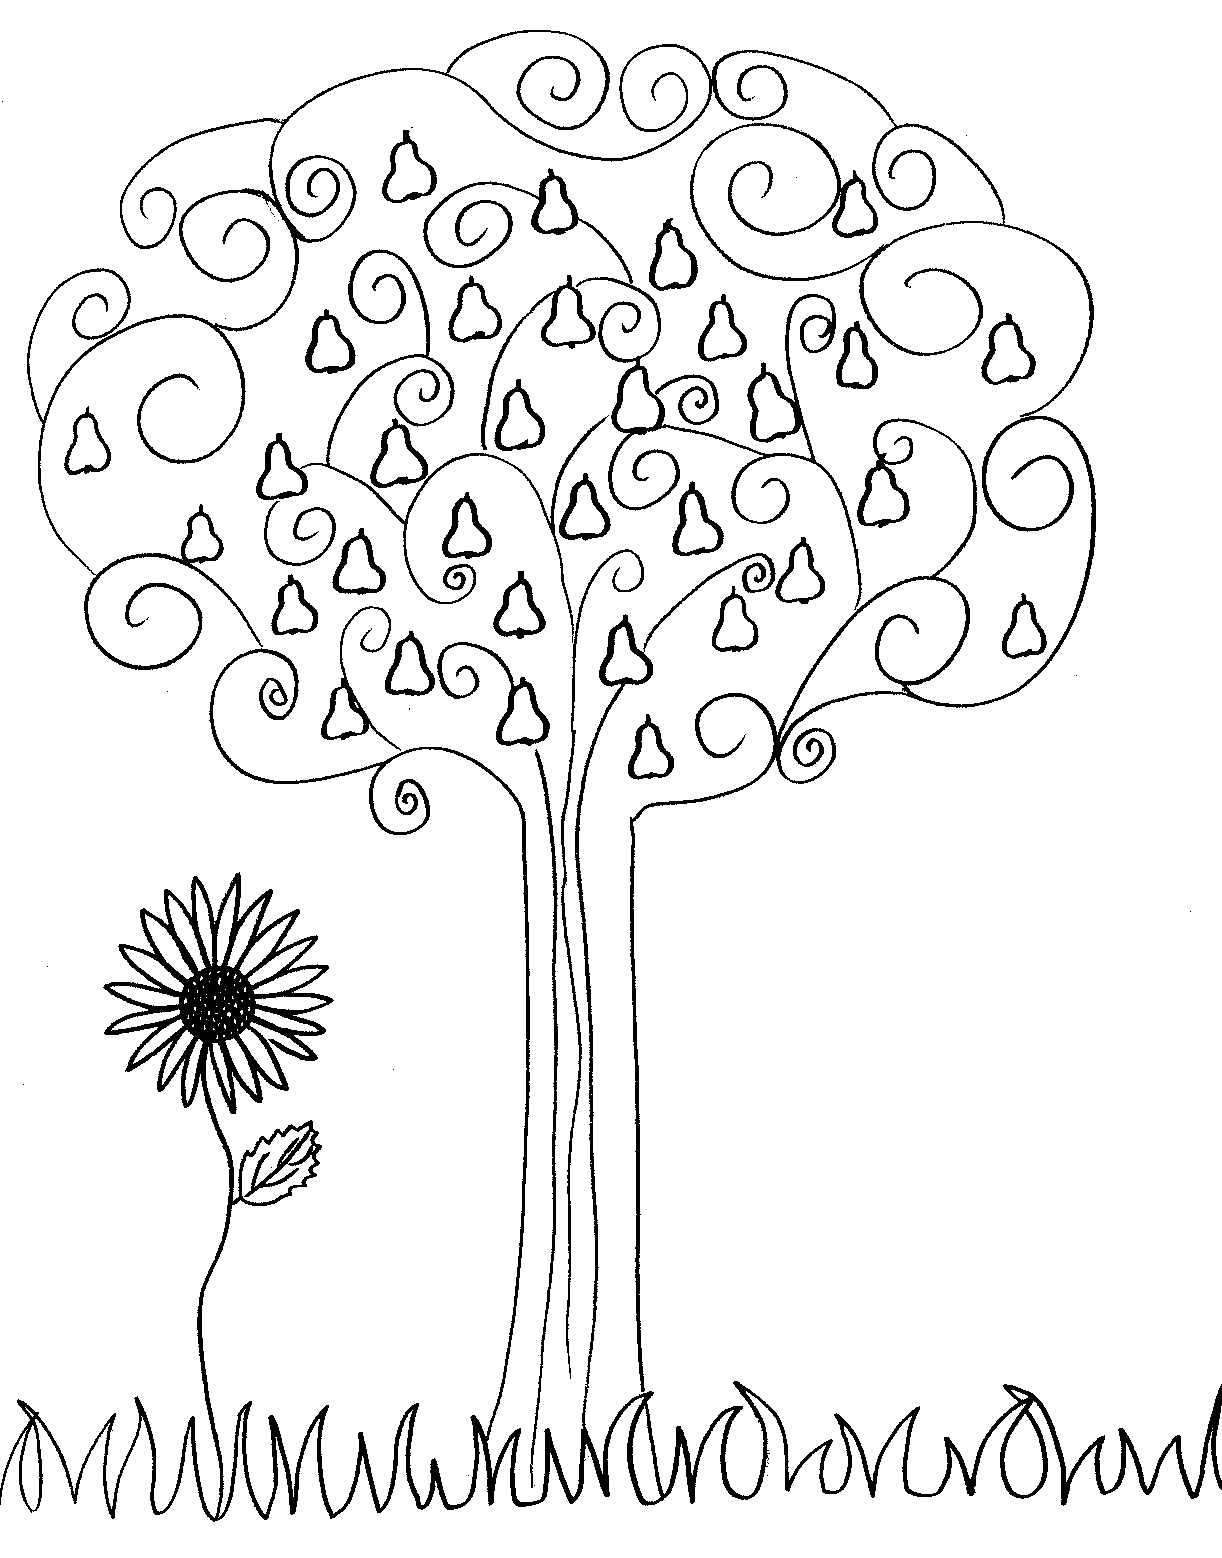 Dibujo sencillo de un árbol y una flor